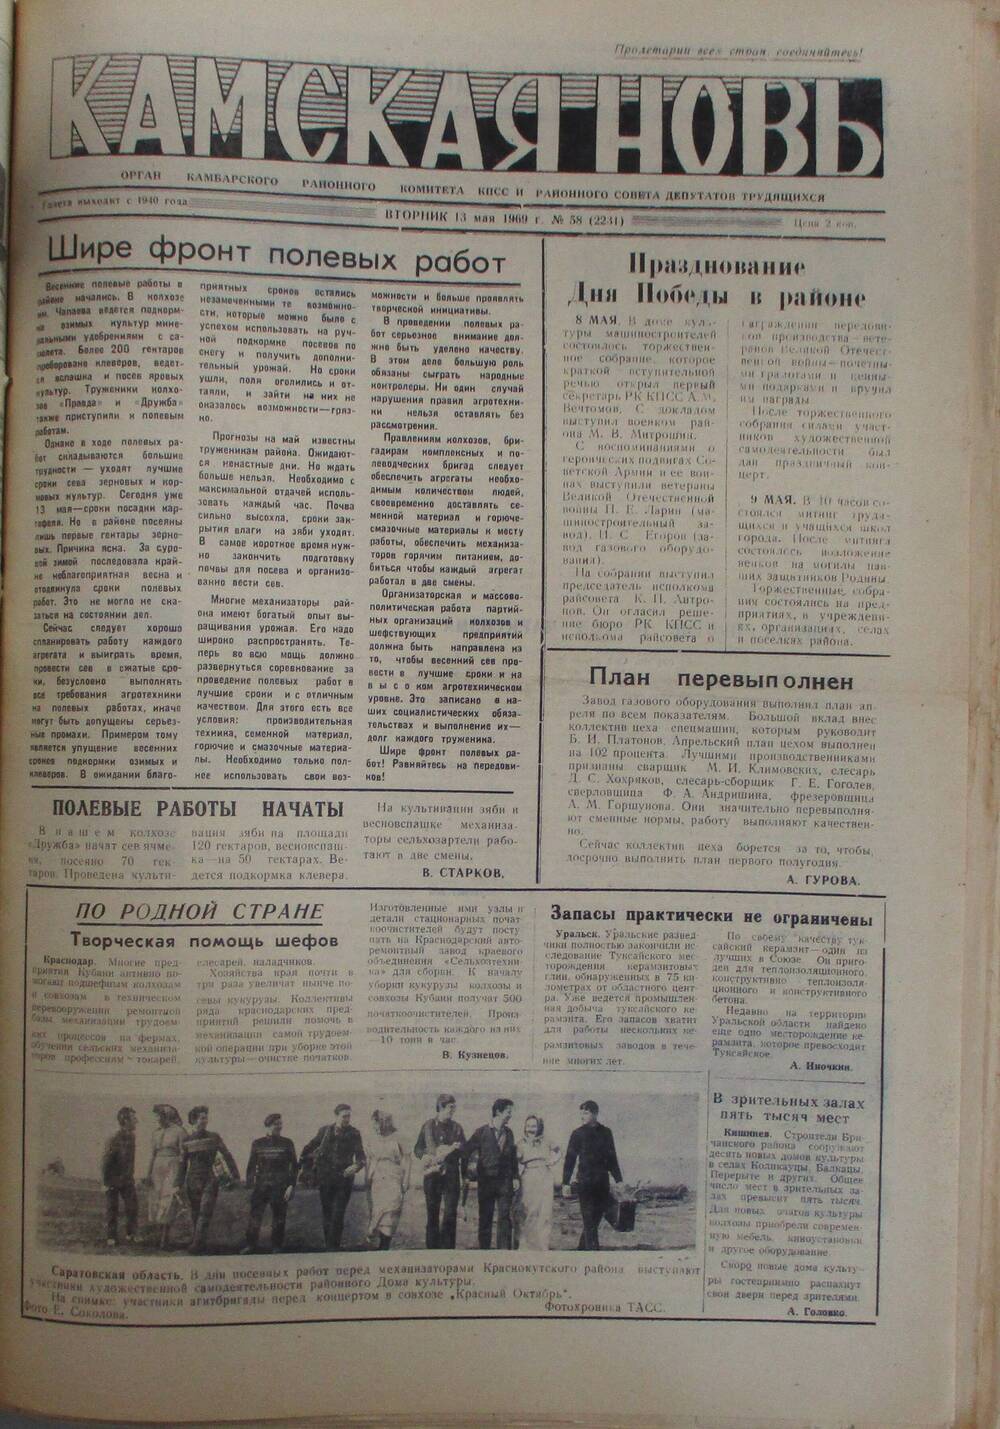 Газеты Камская новь за 1969 год, орган Камбарского райсовета и  РККПСС, с №1 по №66, с №68 по №156. №58.